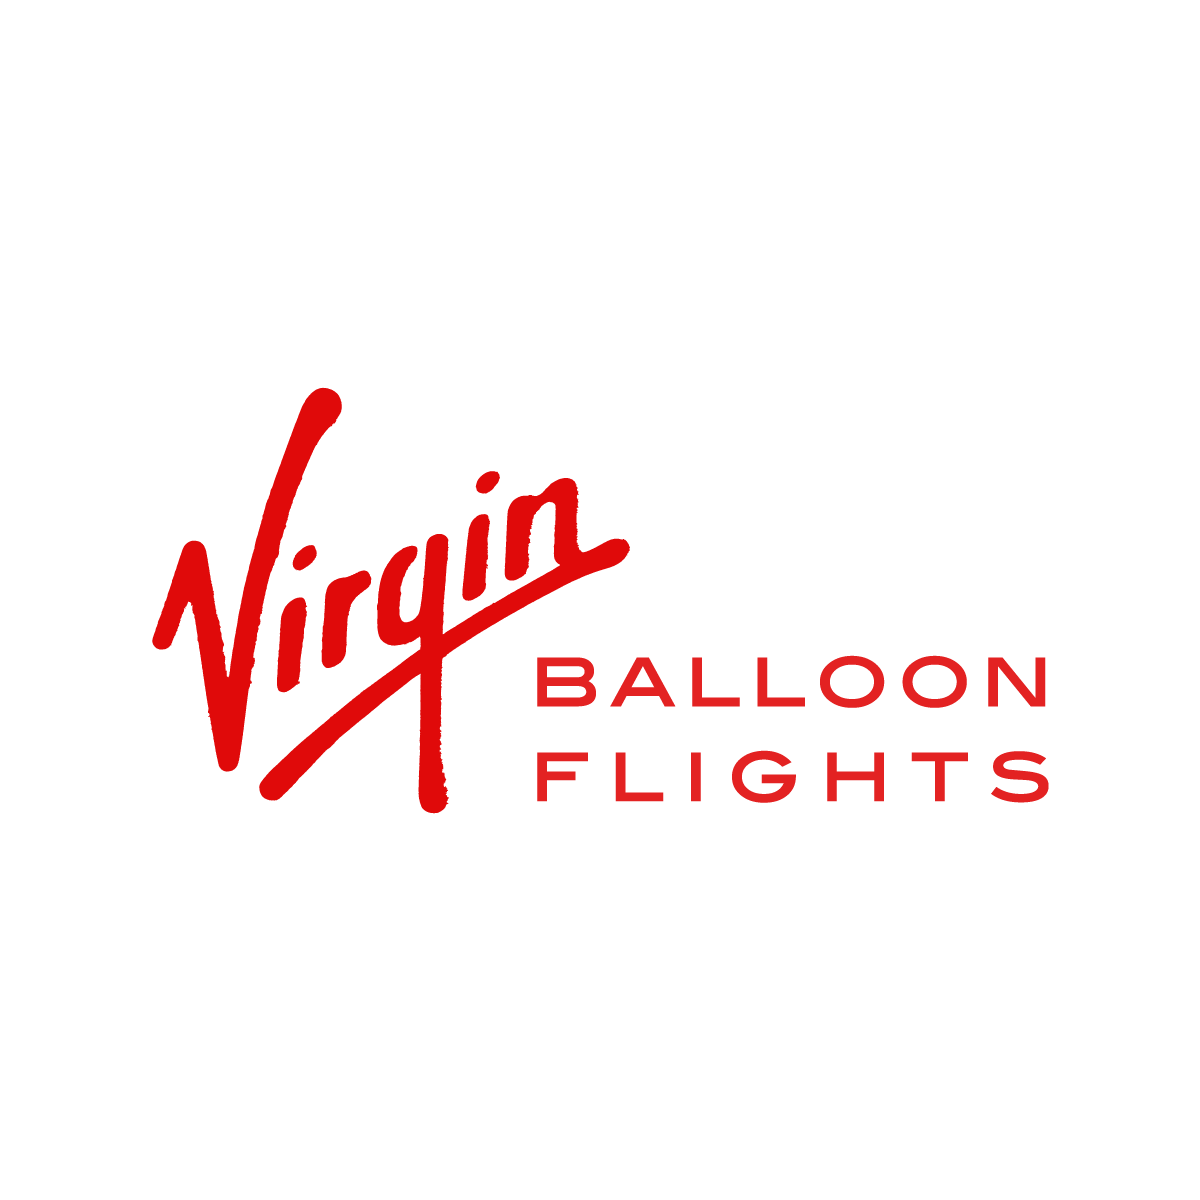 Virgin balloon flights logo